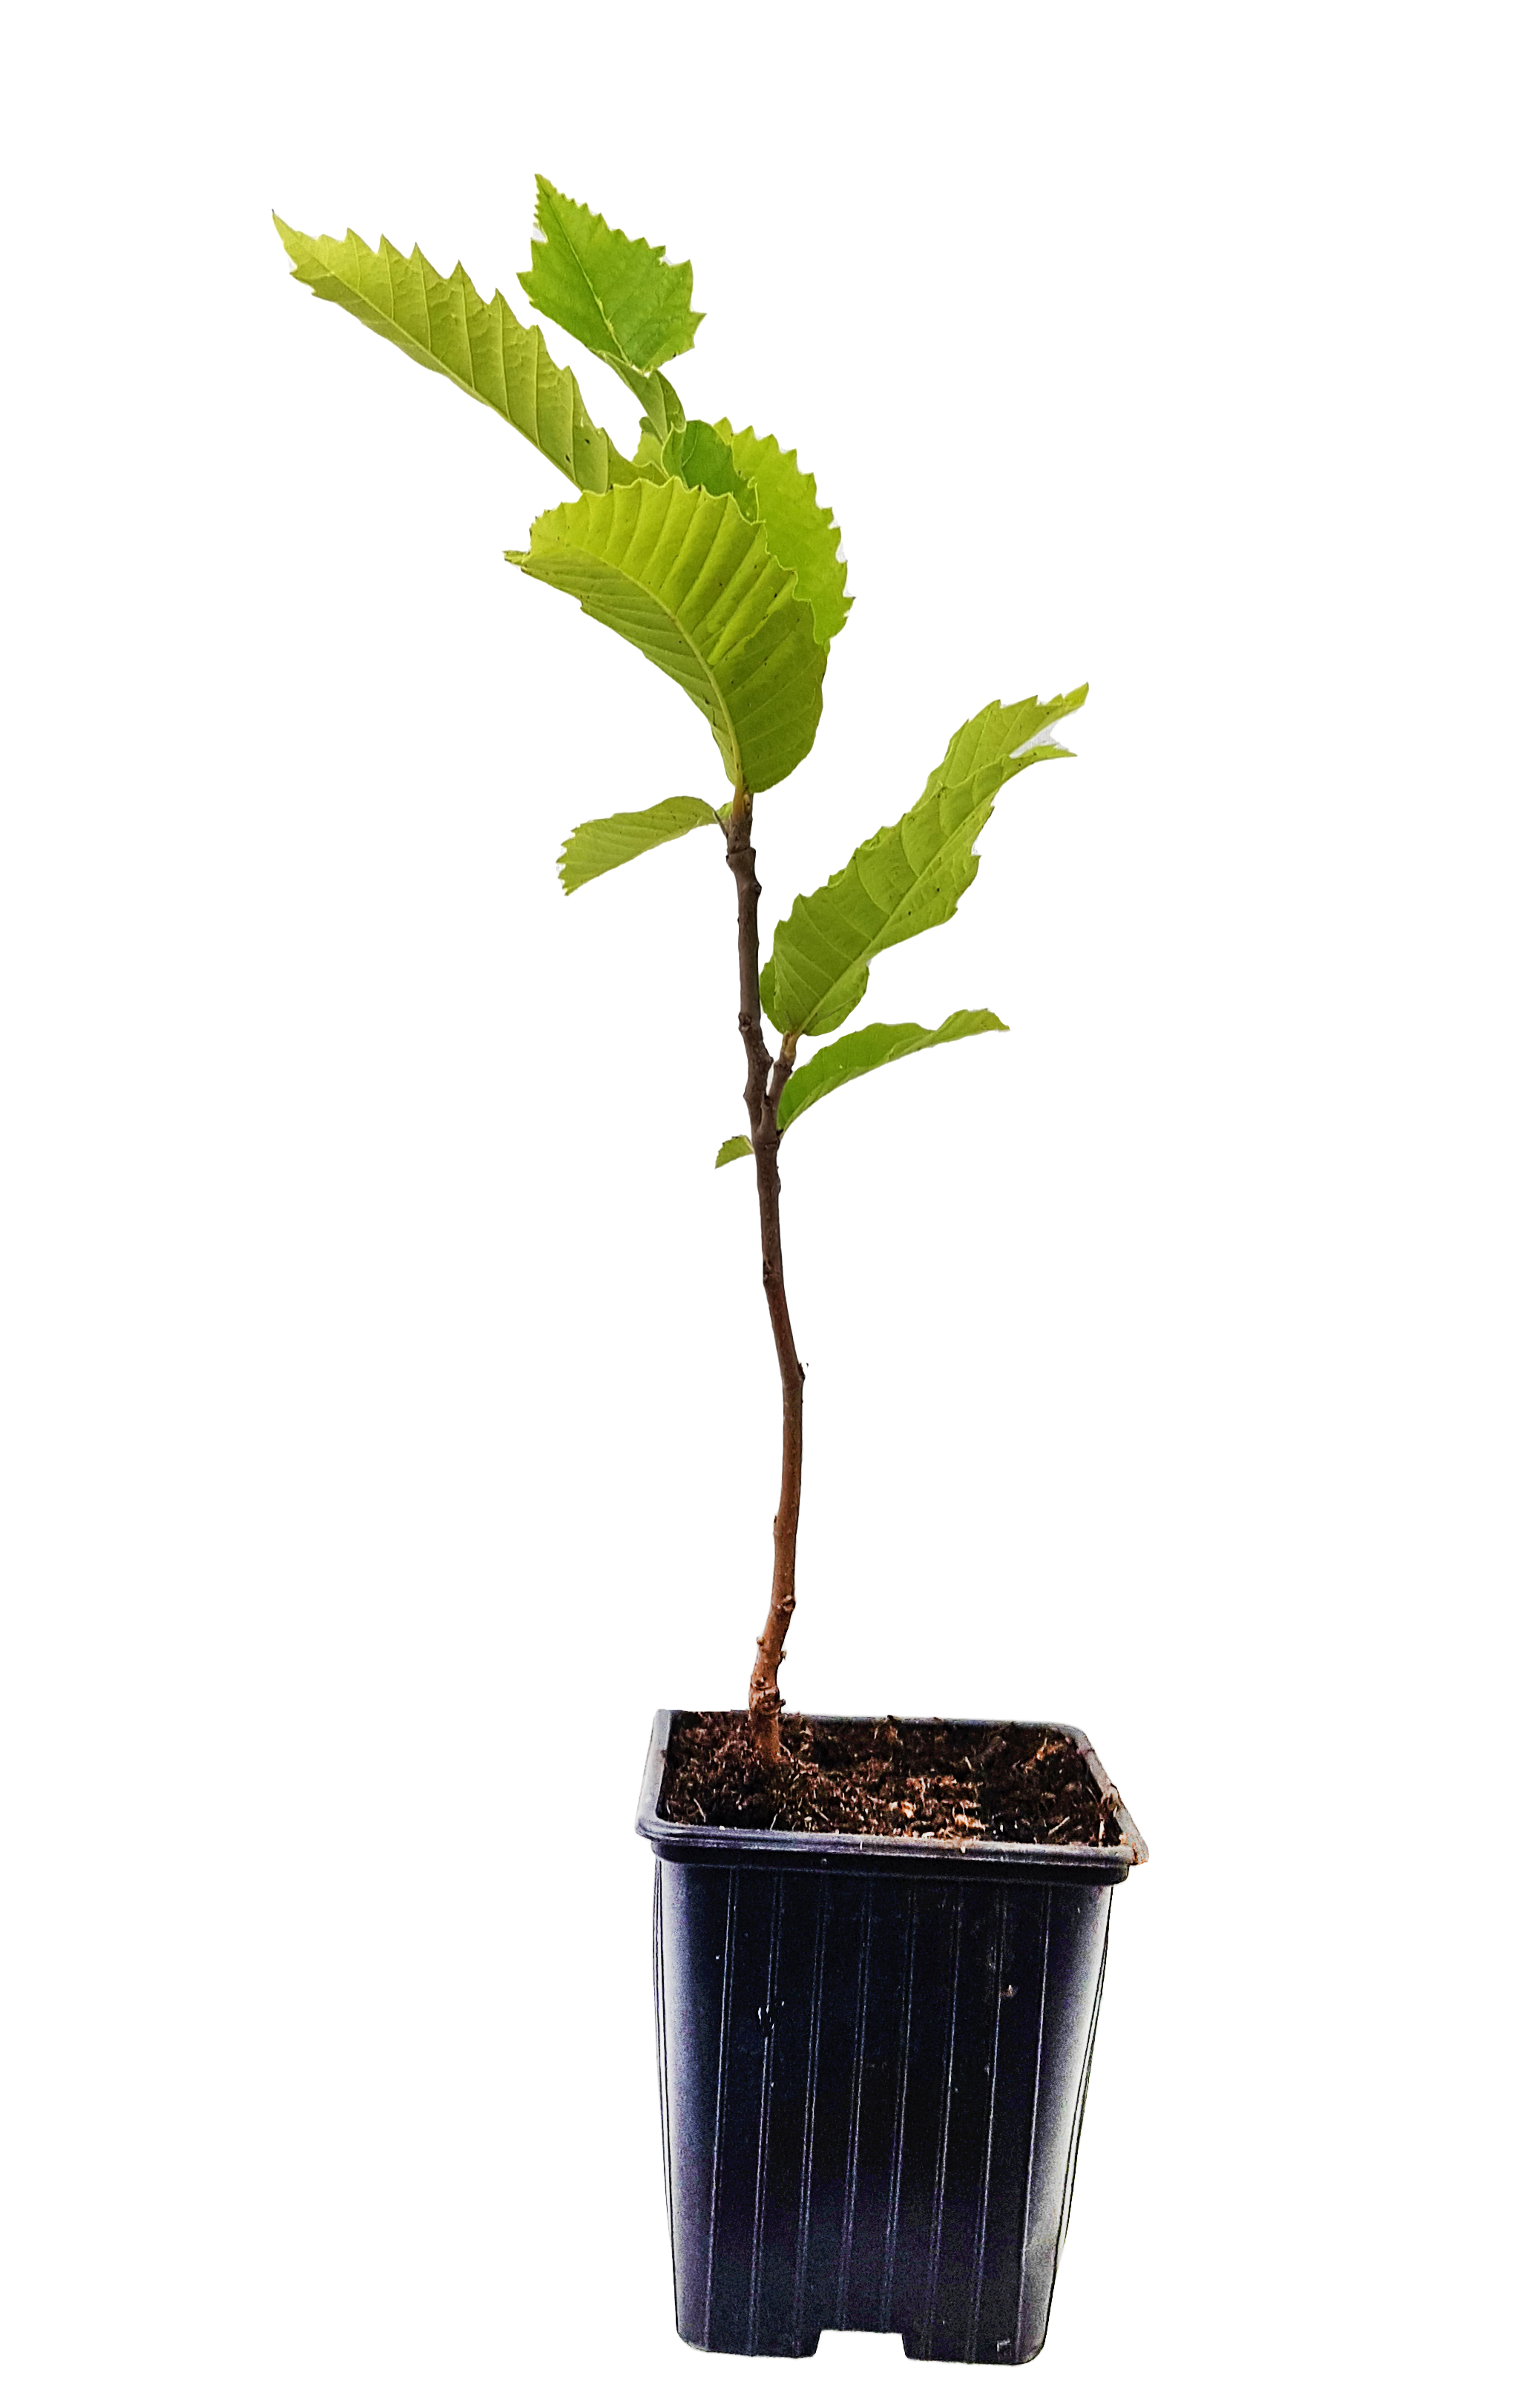 Seedeo® Edelkastanie / Esskastanie (Castanea sativa) Pflanze ca. 30 cm hoch Klimabaum 